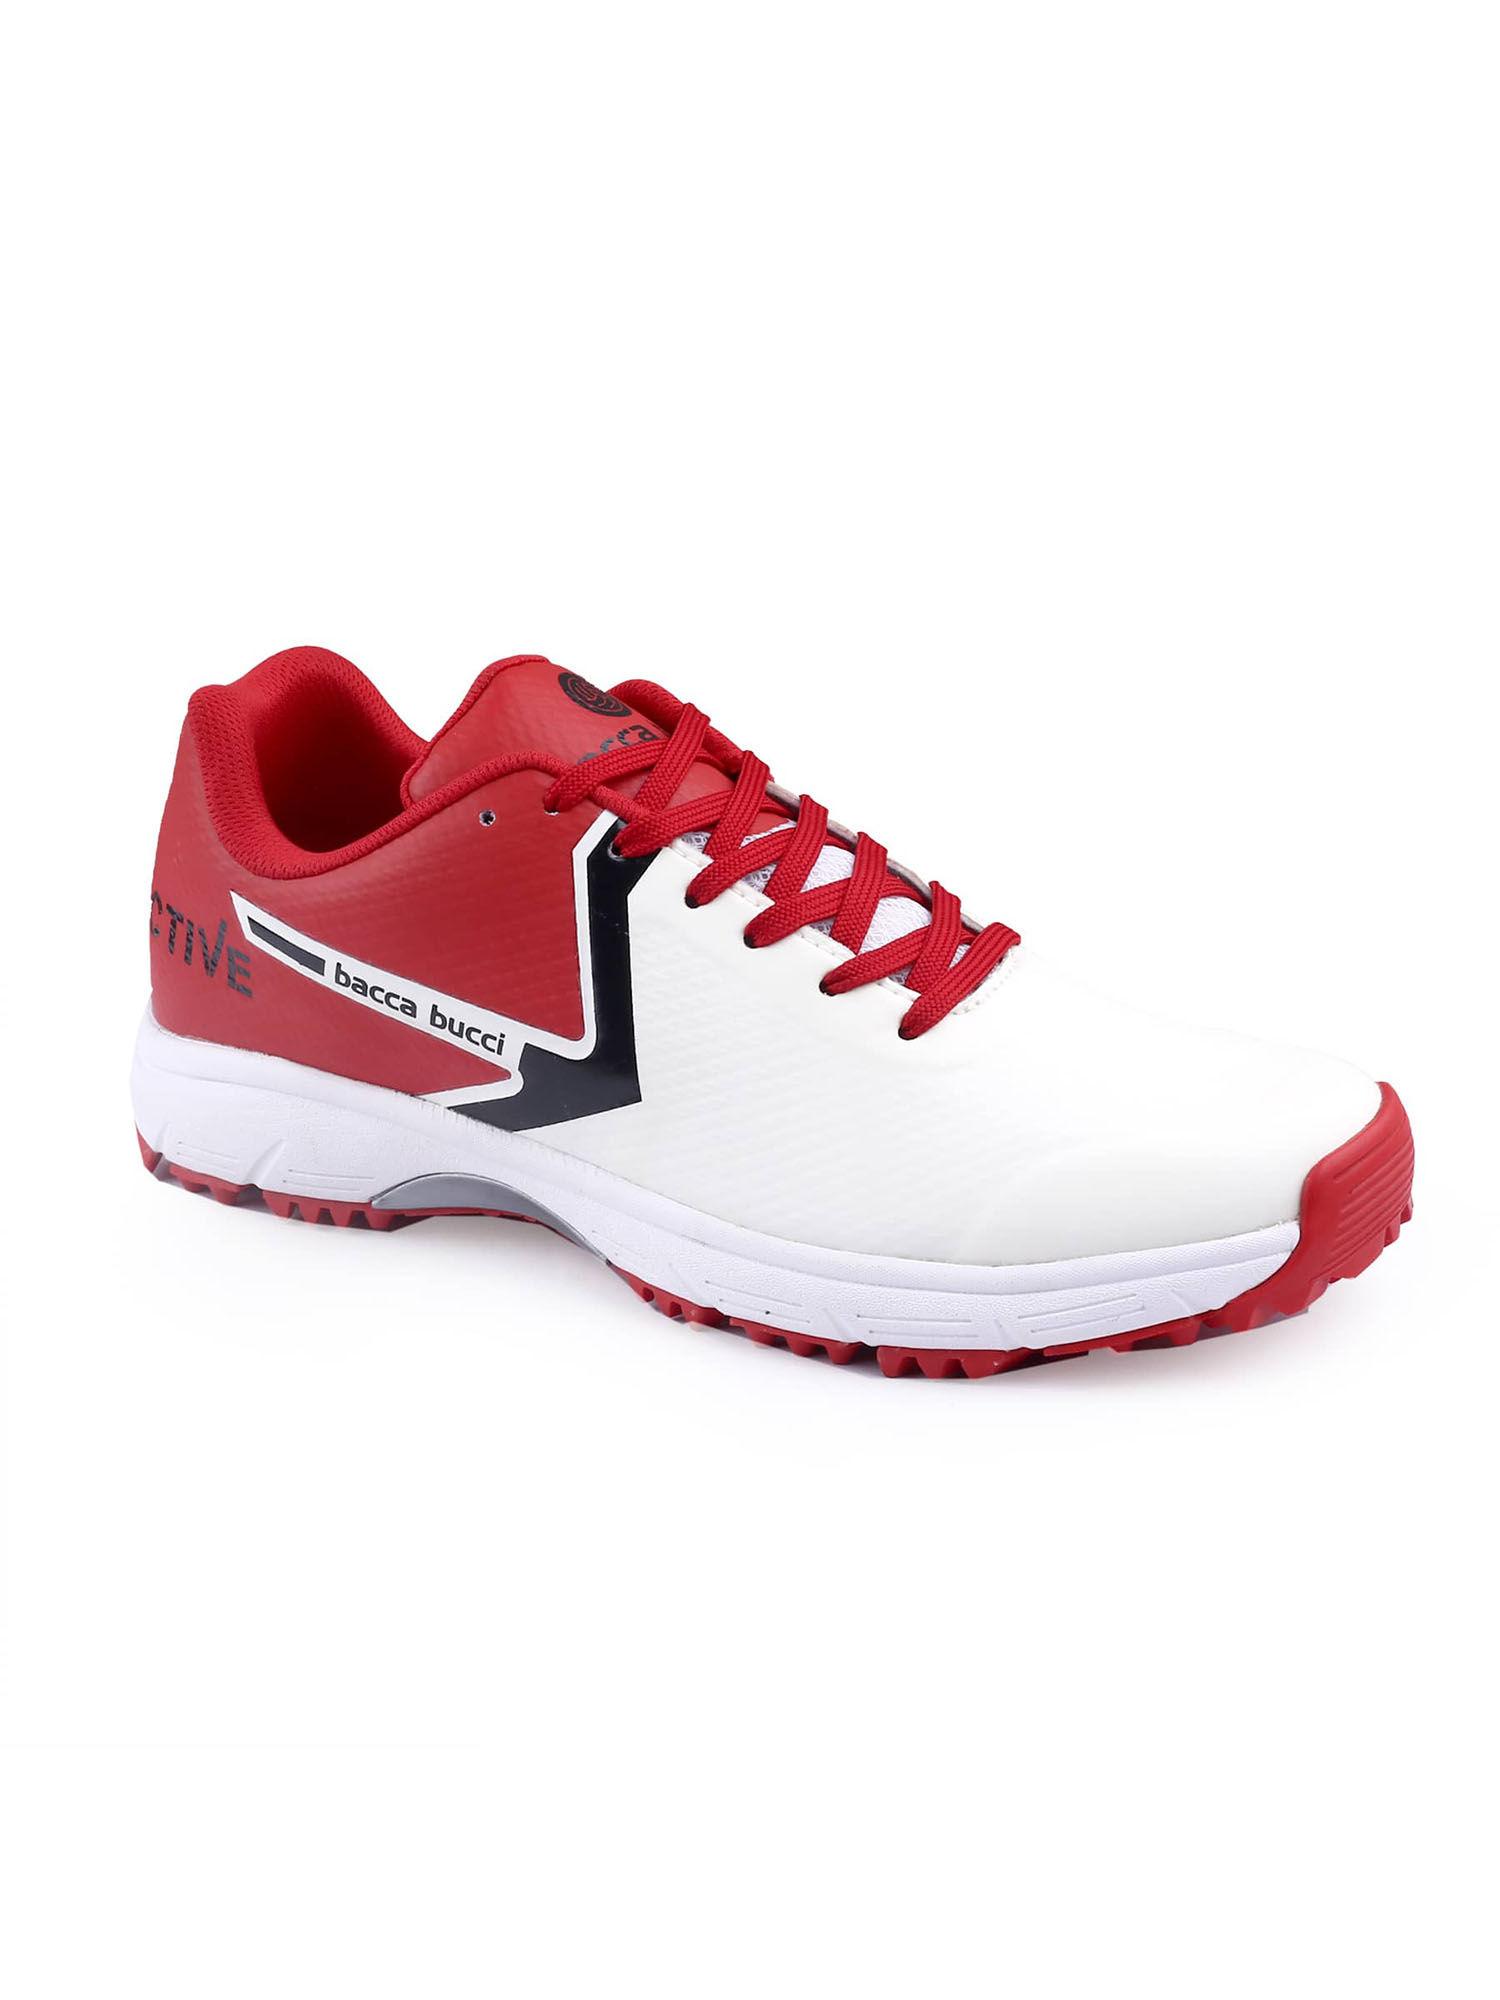 red neon strike pro futsal shoes